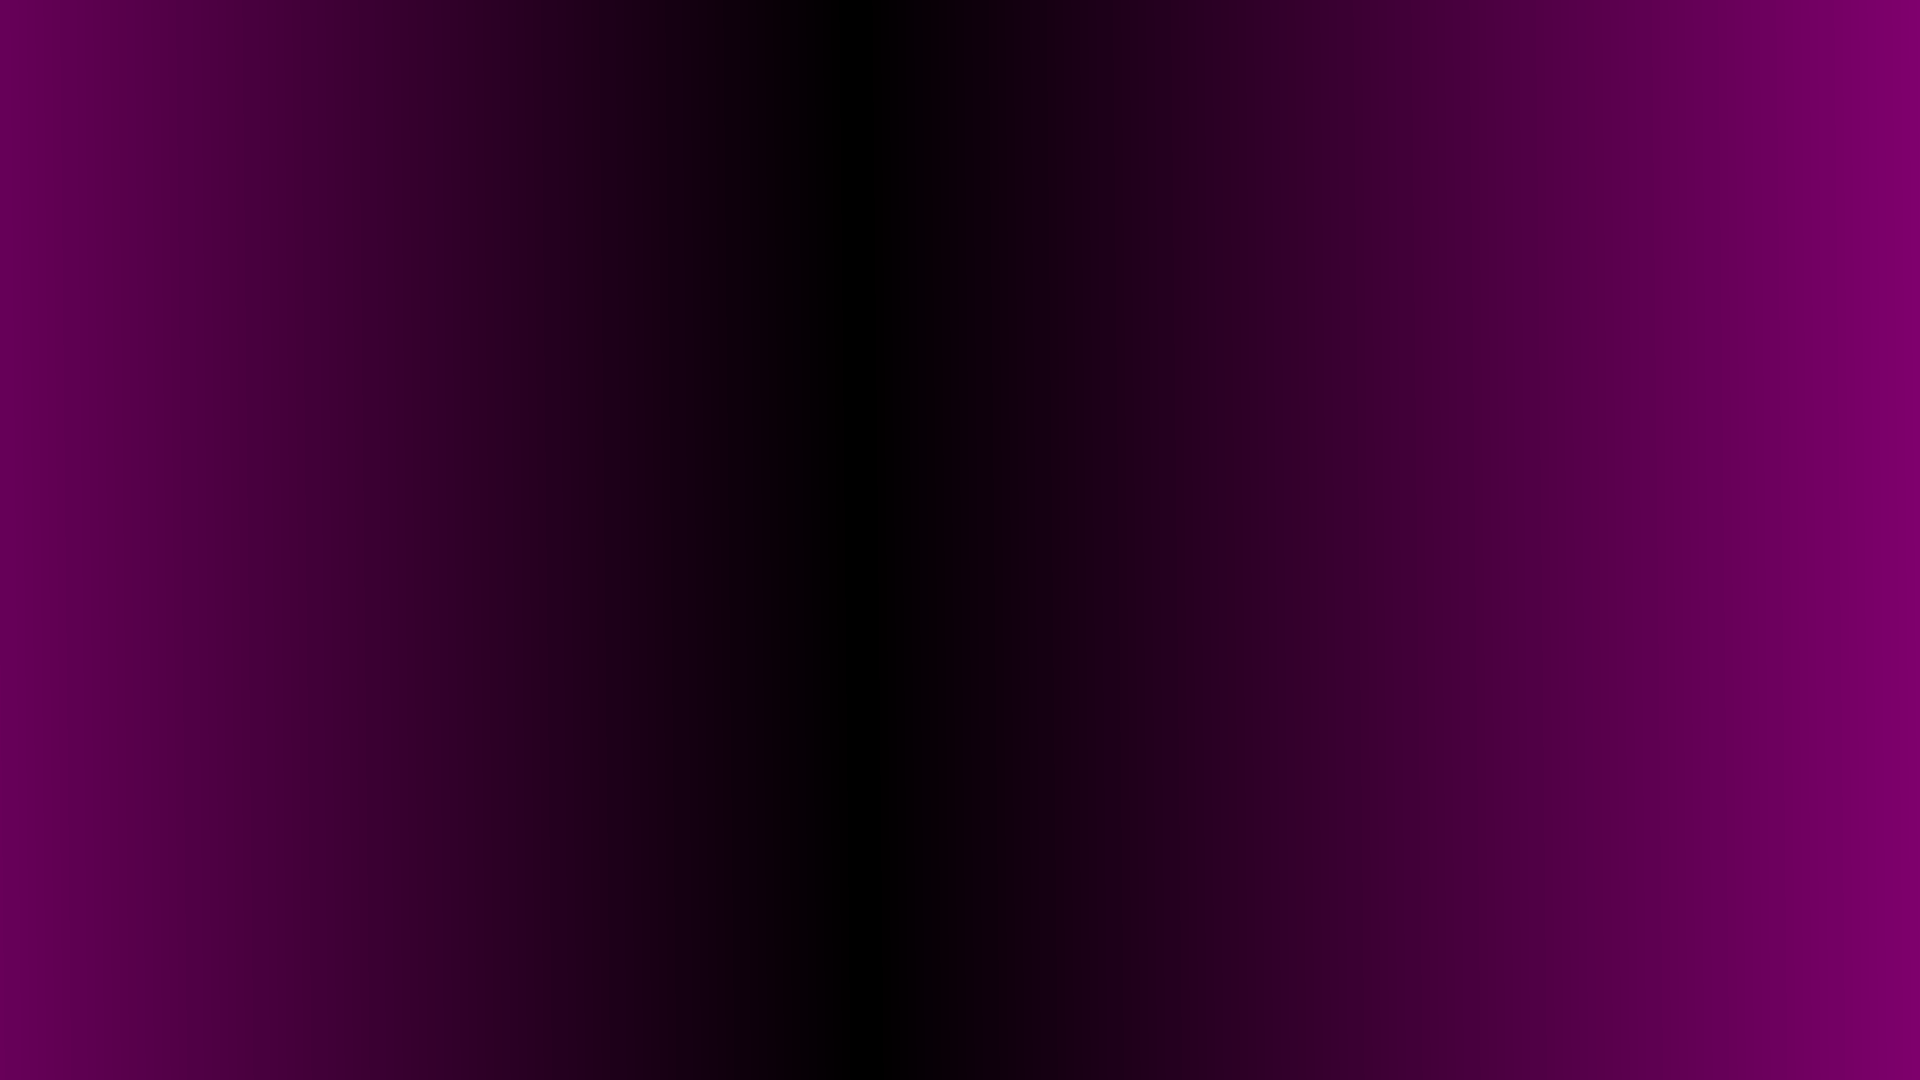 desktop wallpaper gradient pink black desktop 1920x1080 1920x1080